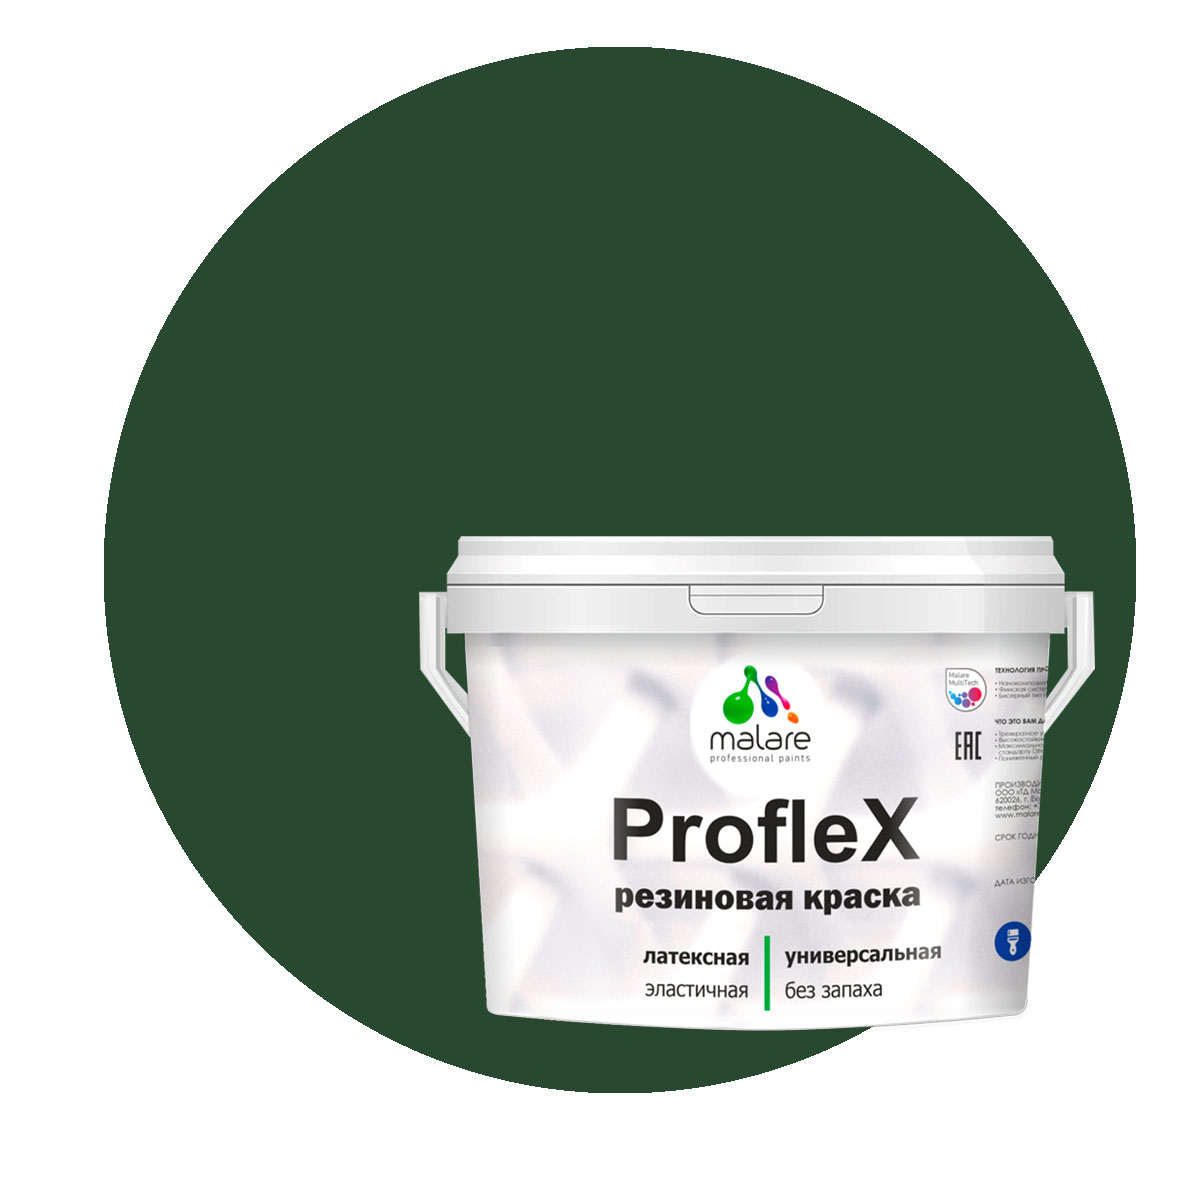 Краска Malare ProfleX для фасадов, интерьера, мебели, гавайский лес, 2 кг. щелочной очиститель фасадов зданий plex